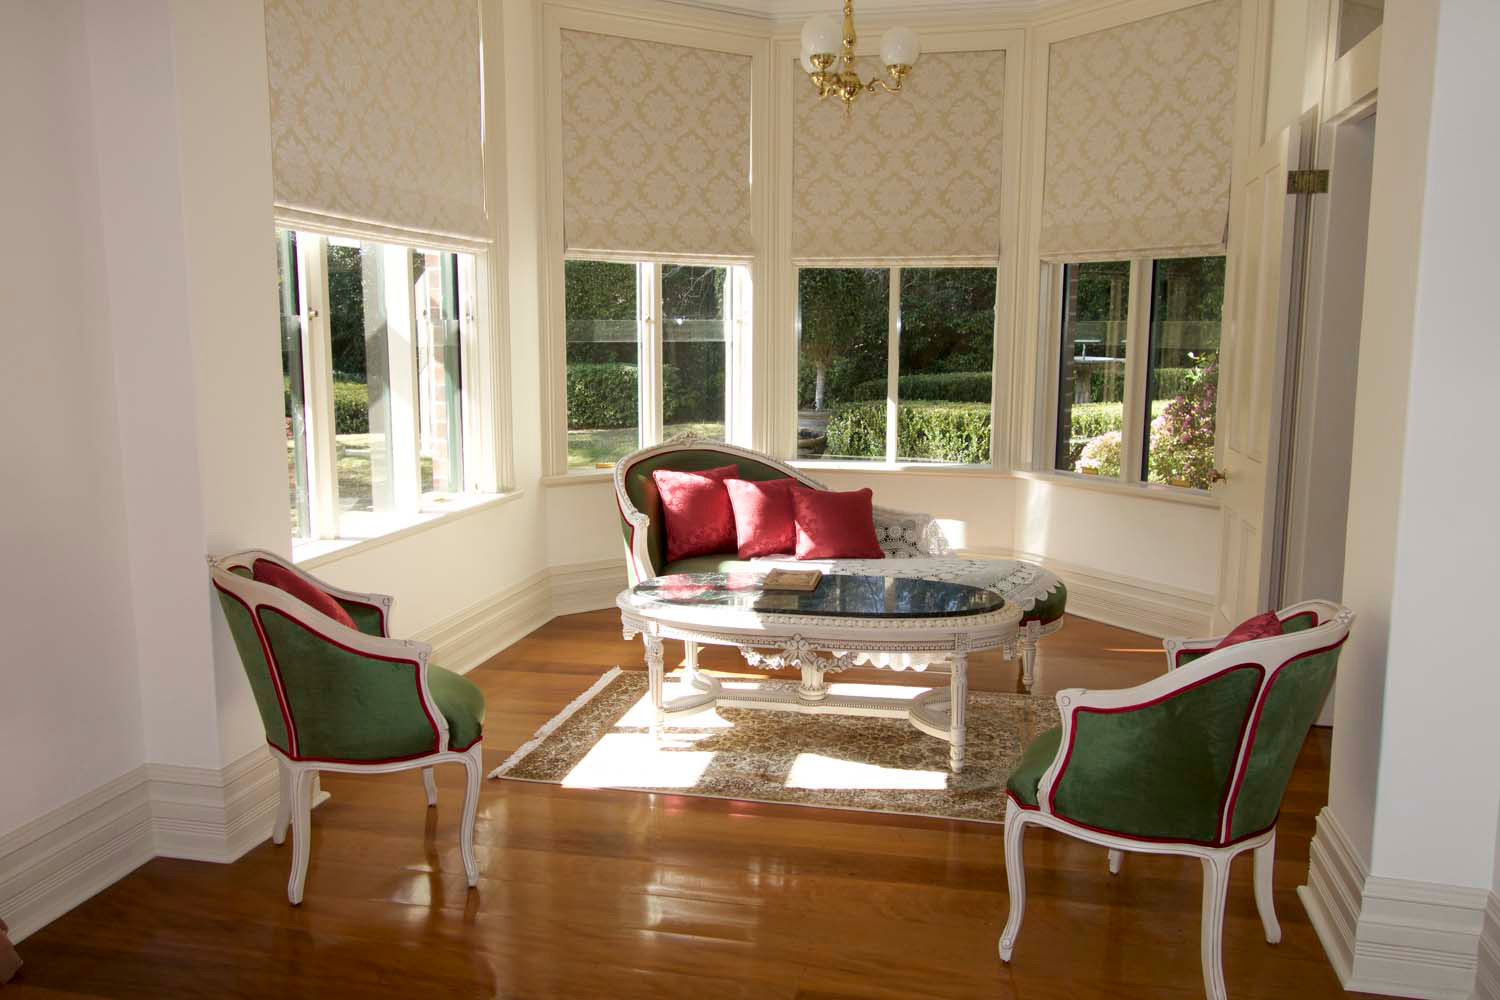 3 French classic interior decor